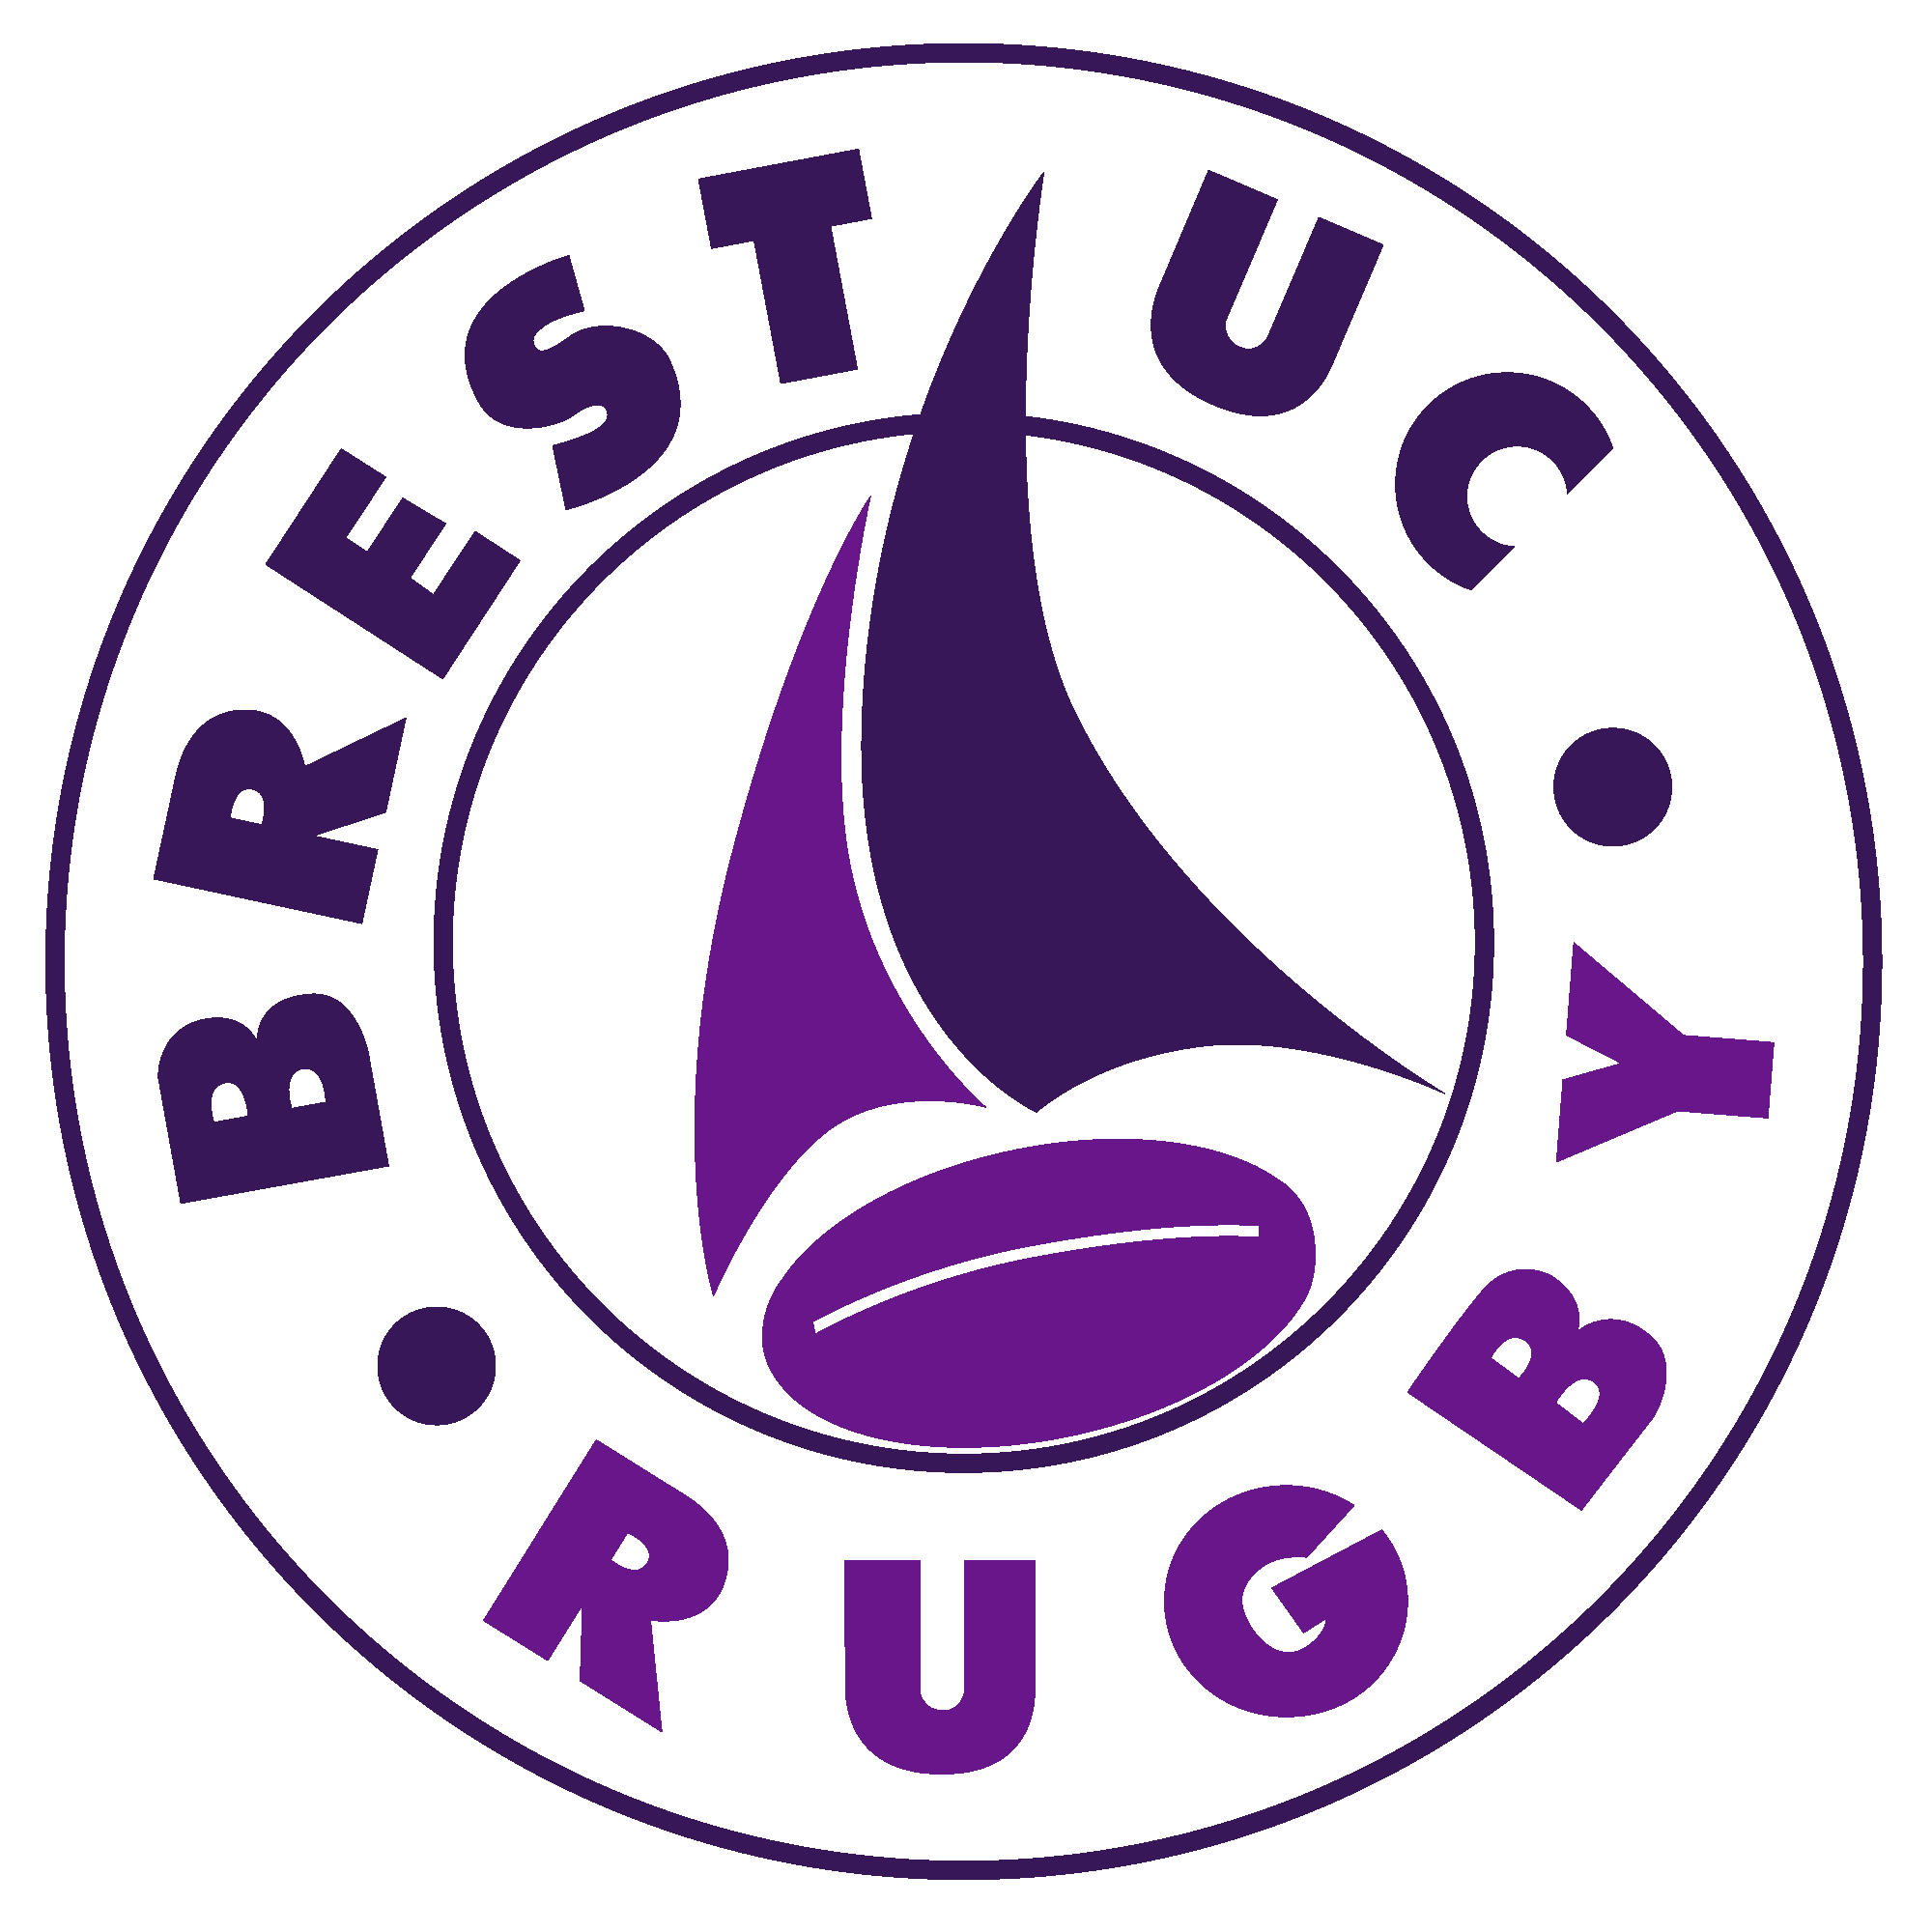 brest-universite-club-logo-620a7cd52d915175178486.png